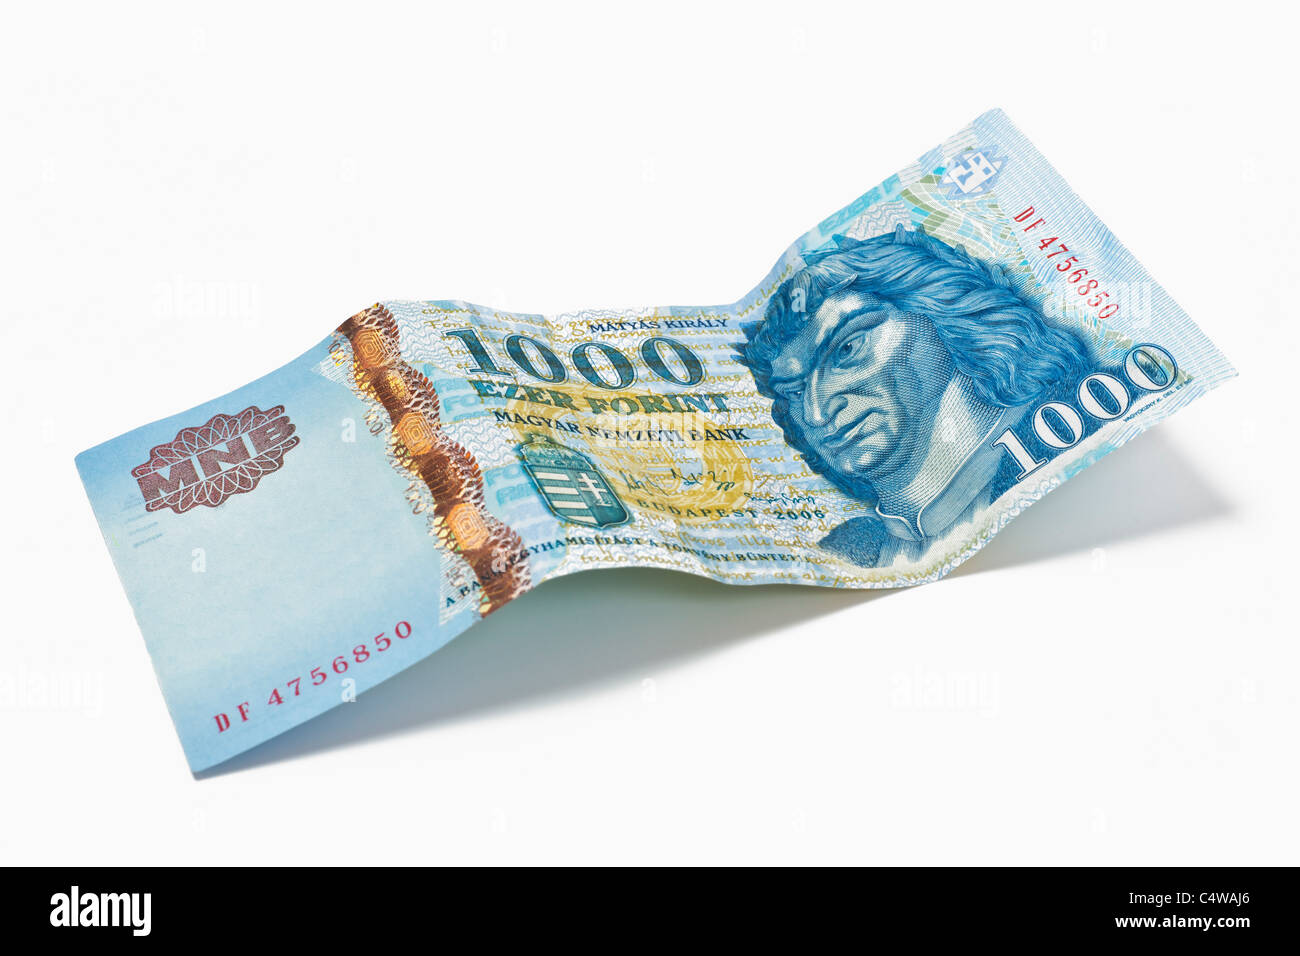 Detailansicht einer ungarischen 1000 Forint Banknote | Detail photo of a Hungarian 1000 forint Banknote Stock Photo